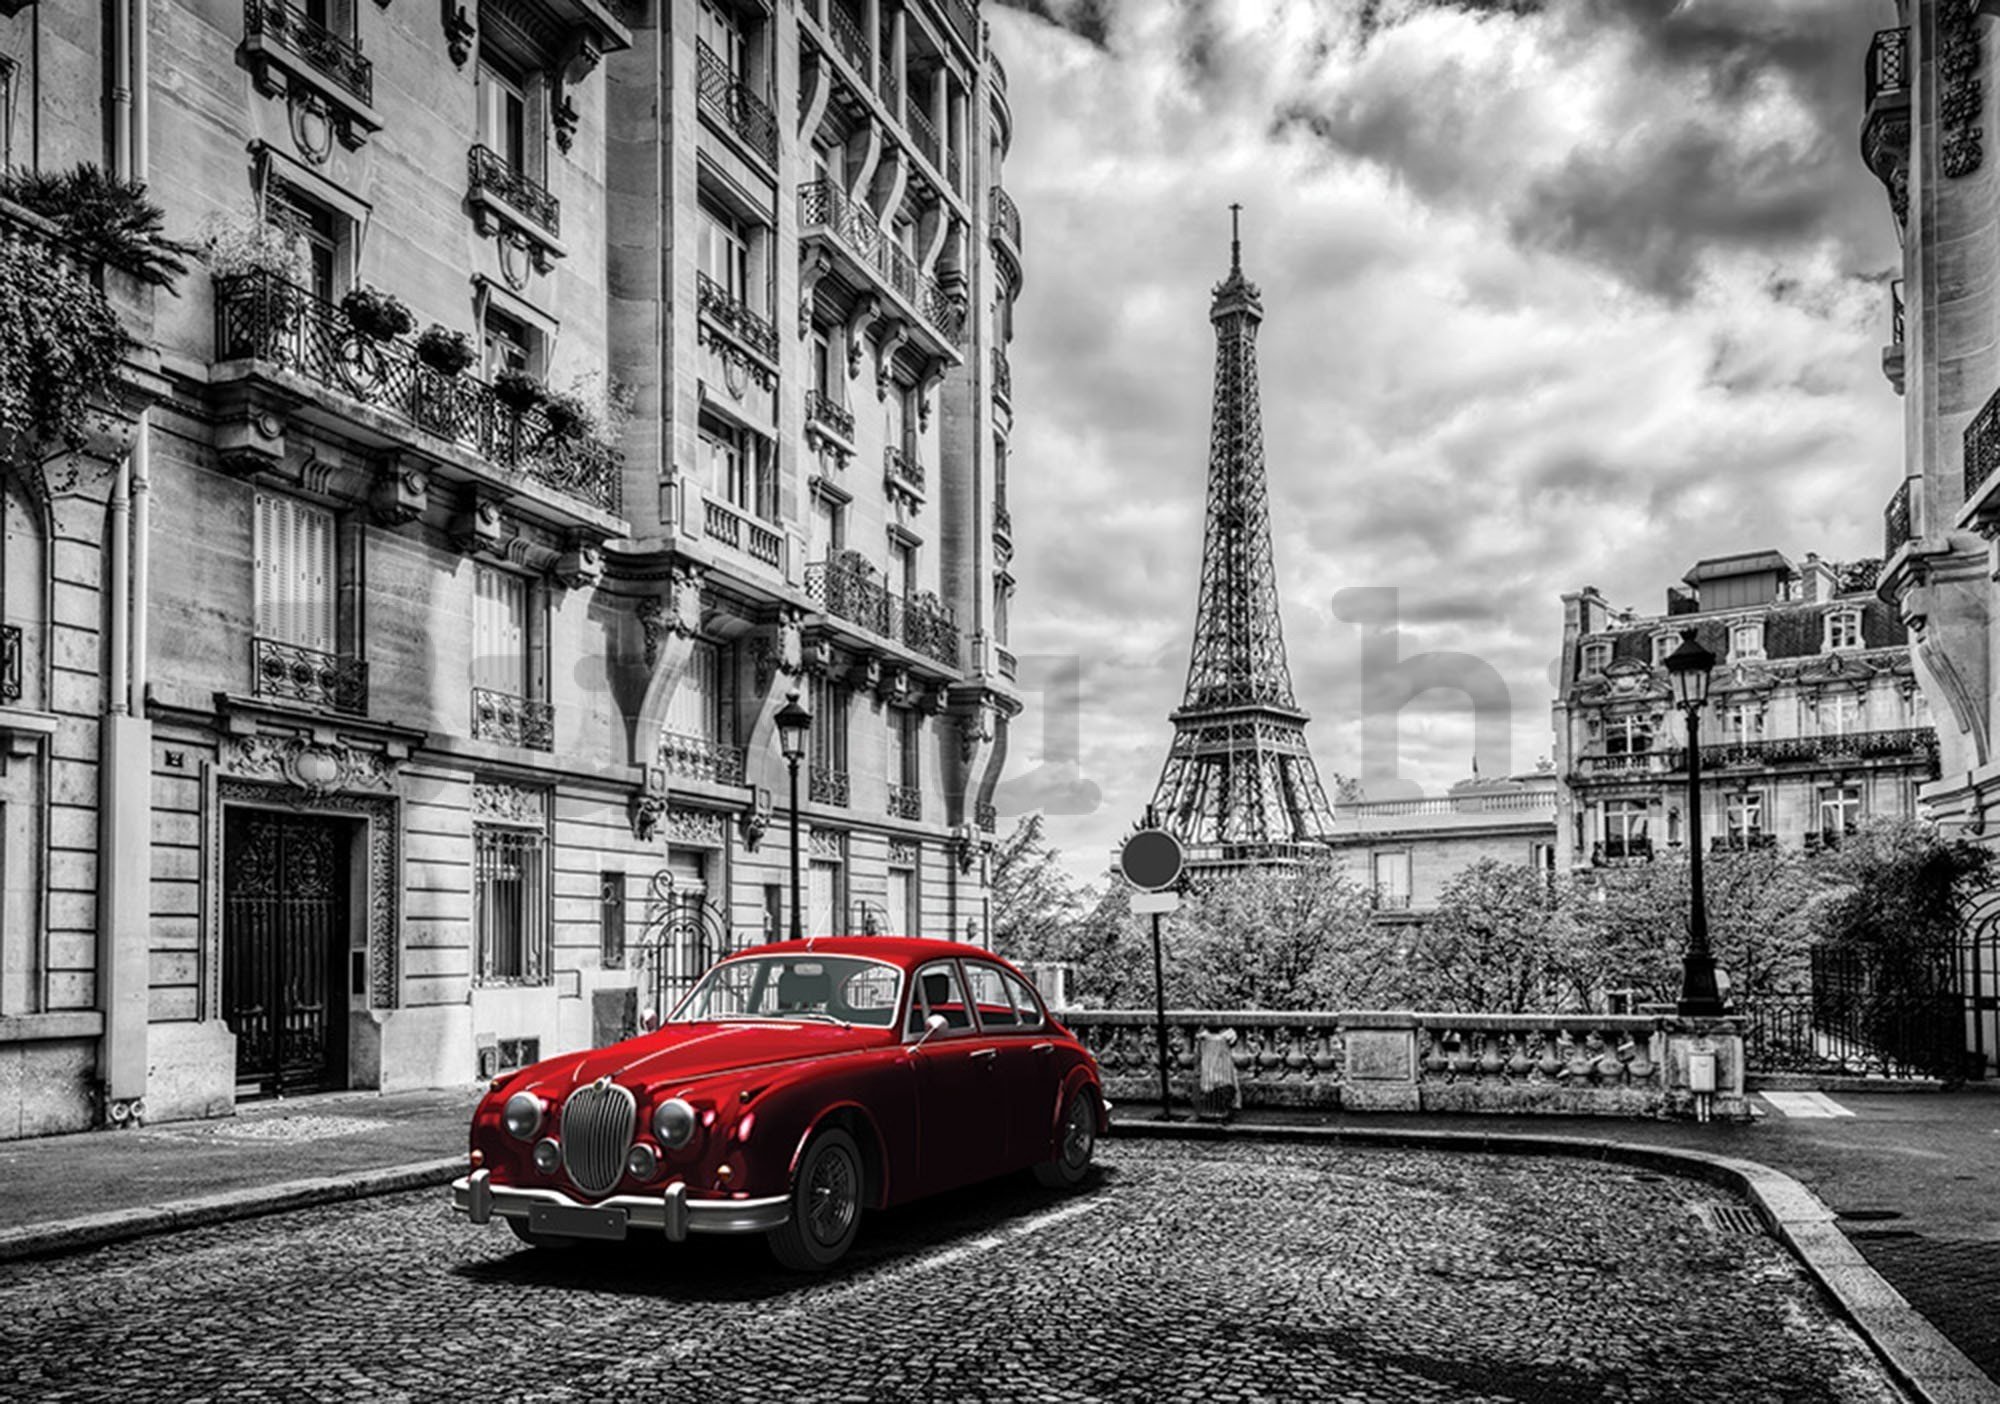 Vlies fotótapéta: Eiffel-torony és vintage autó - 416x254 cm